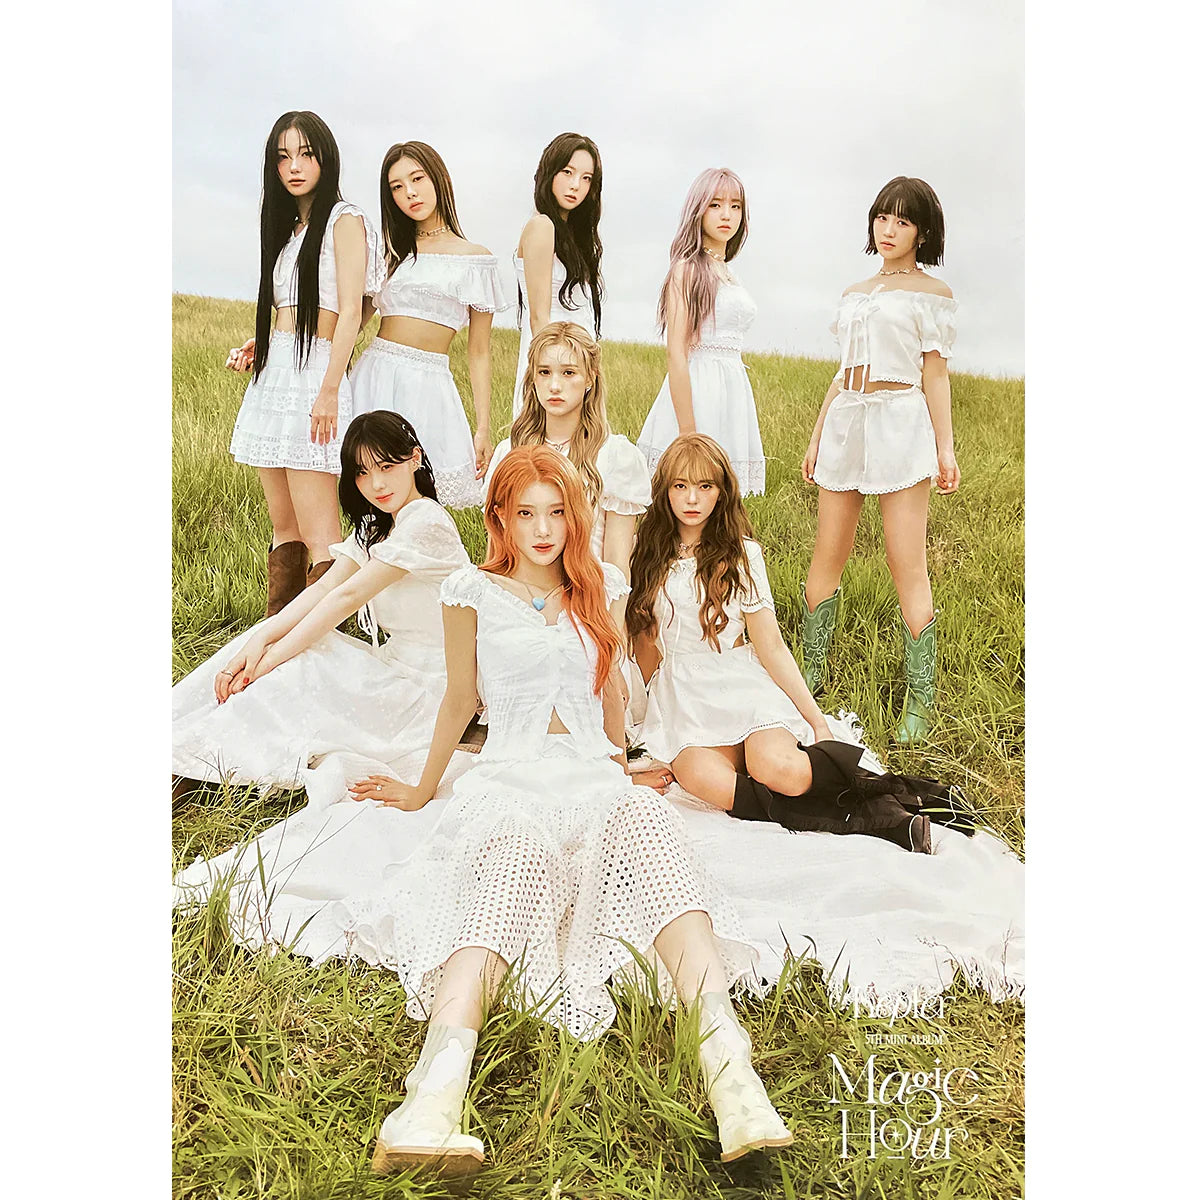 KEP1ER 5th Mini Album MAGIC HOUR Poster Sunkissed